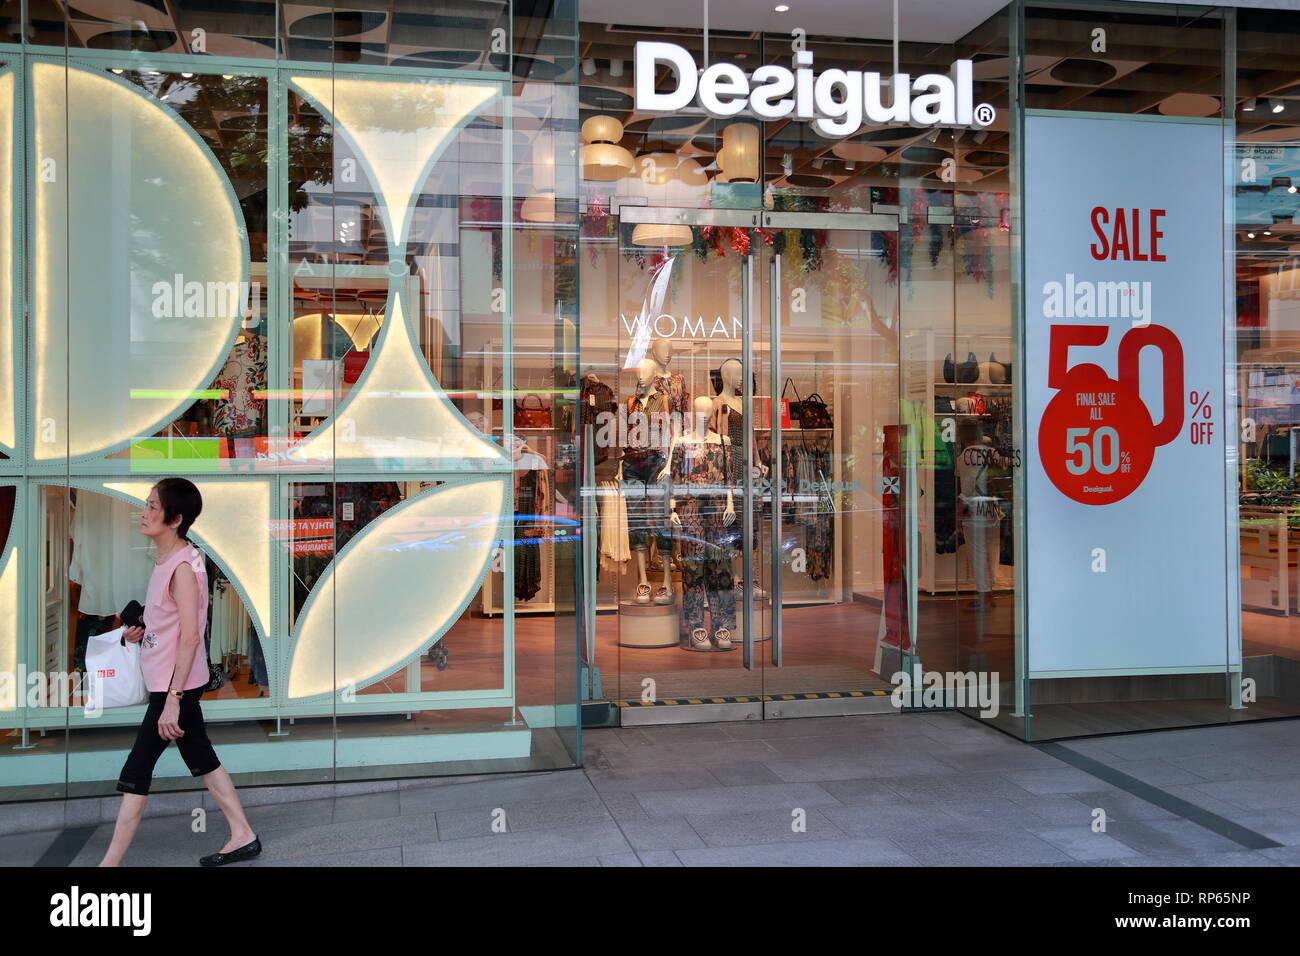 Desigual Store in der Innenstadt von Singapur Stockfotografie - Alamy